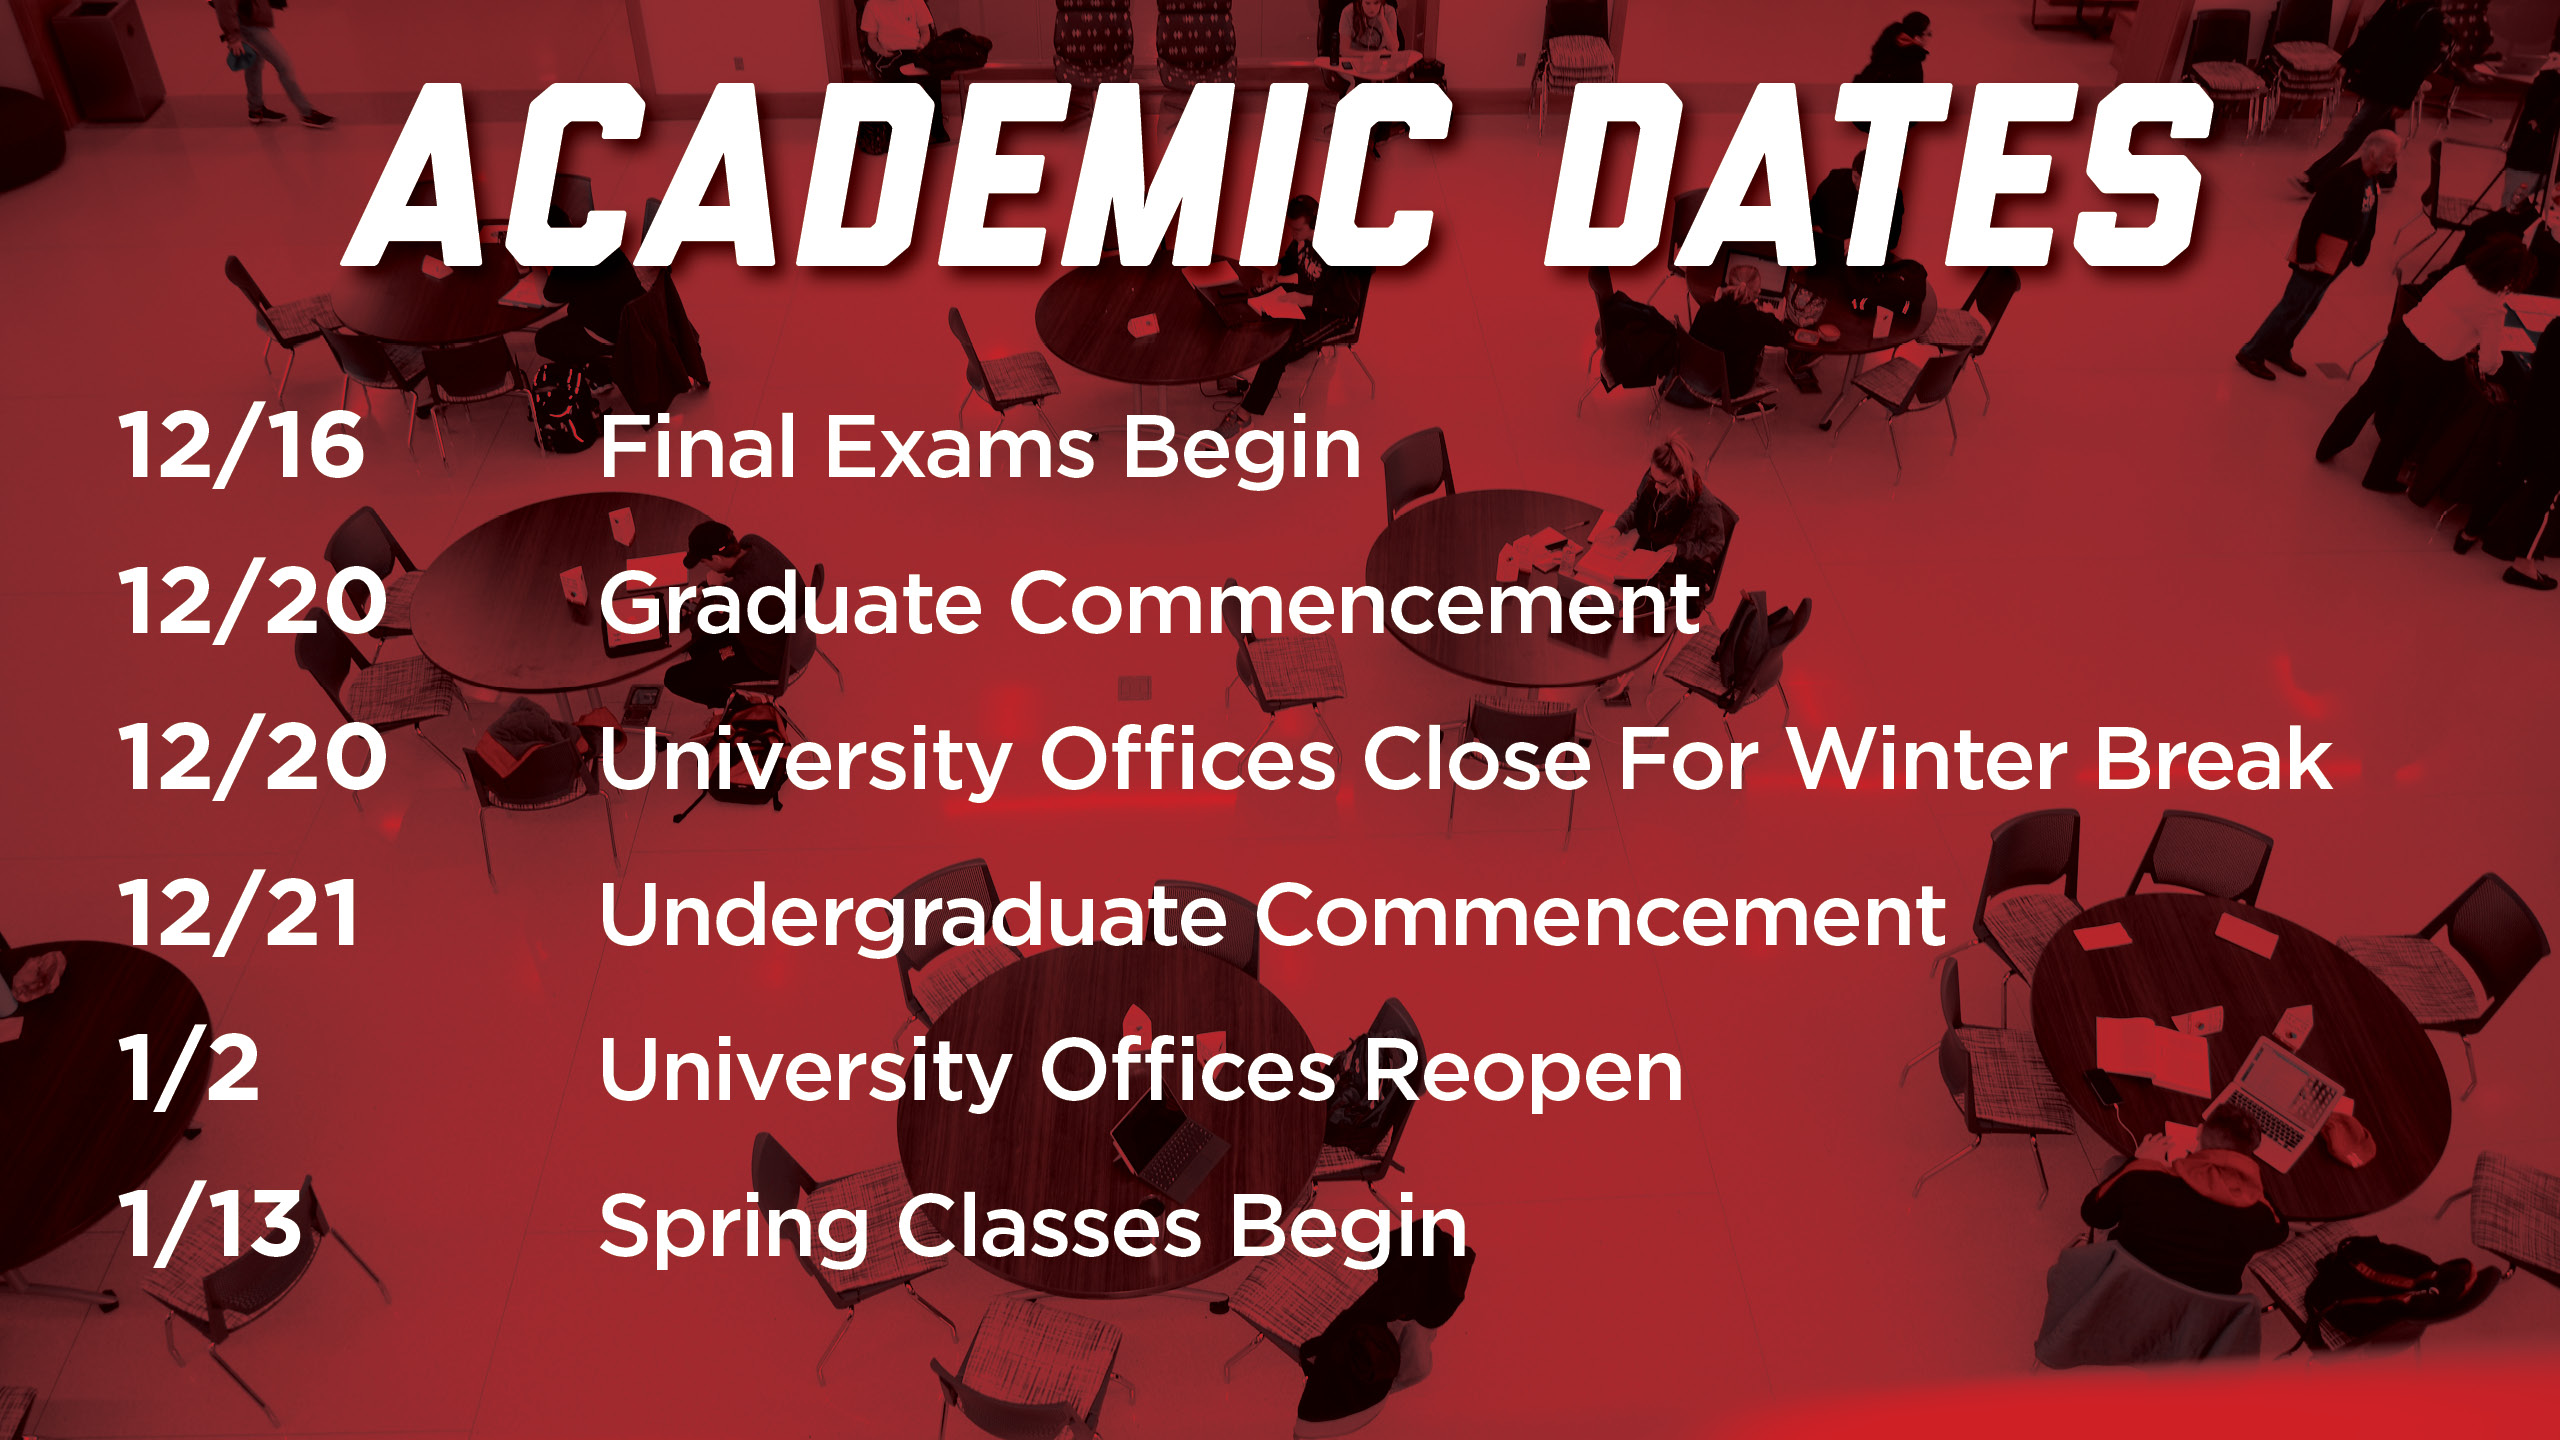 Academic Dates Announce University of NebraskaLincoln